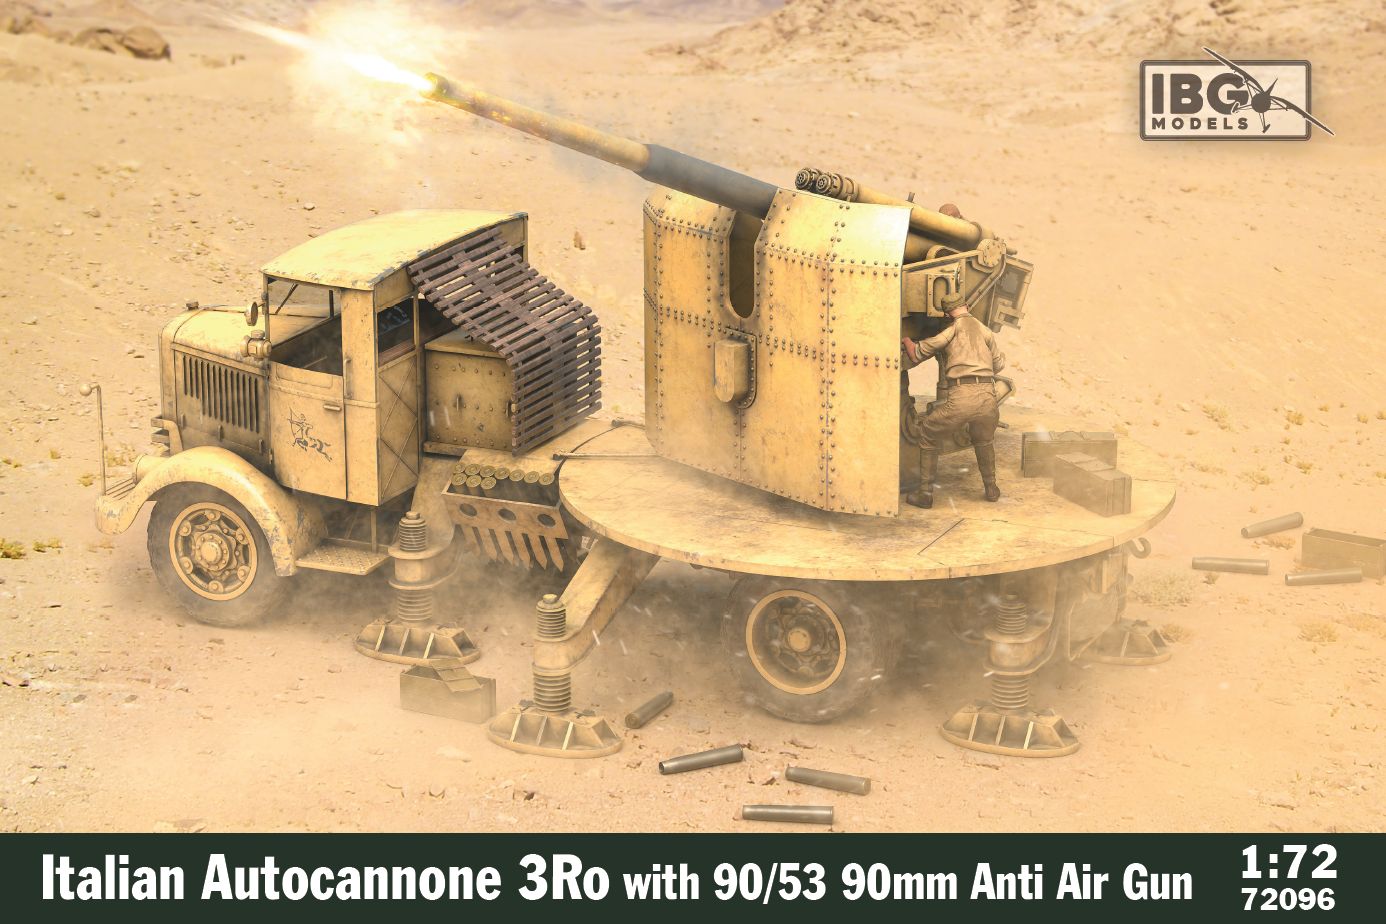 1/72 3Ro Italian Autocannone 90/53 with 90mm Anti Air Gun - IBG